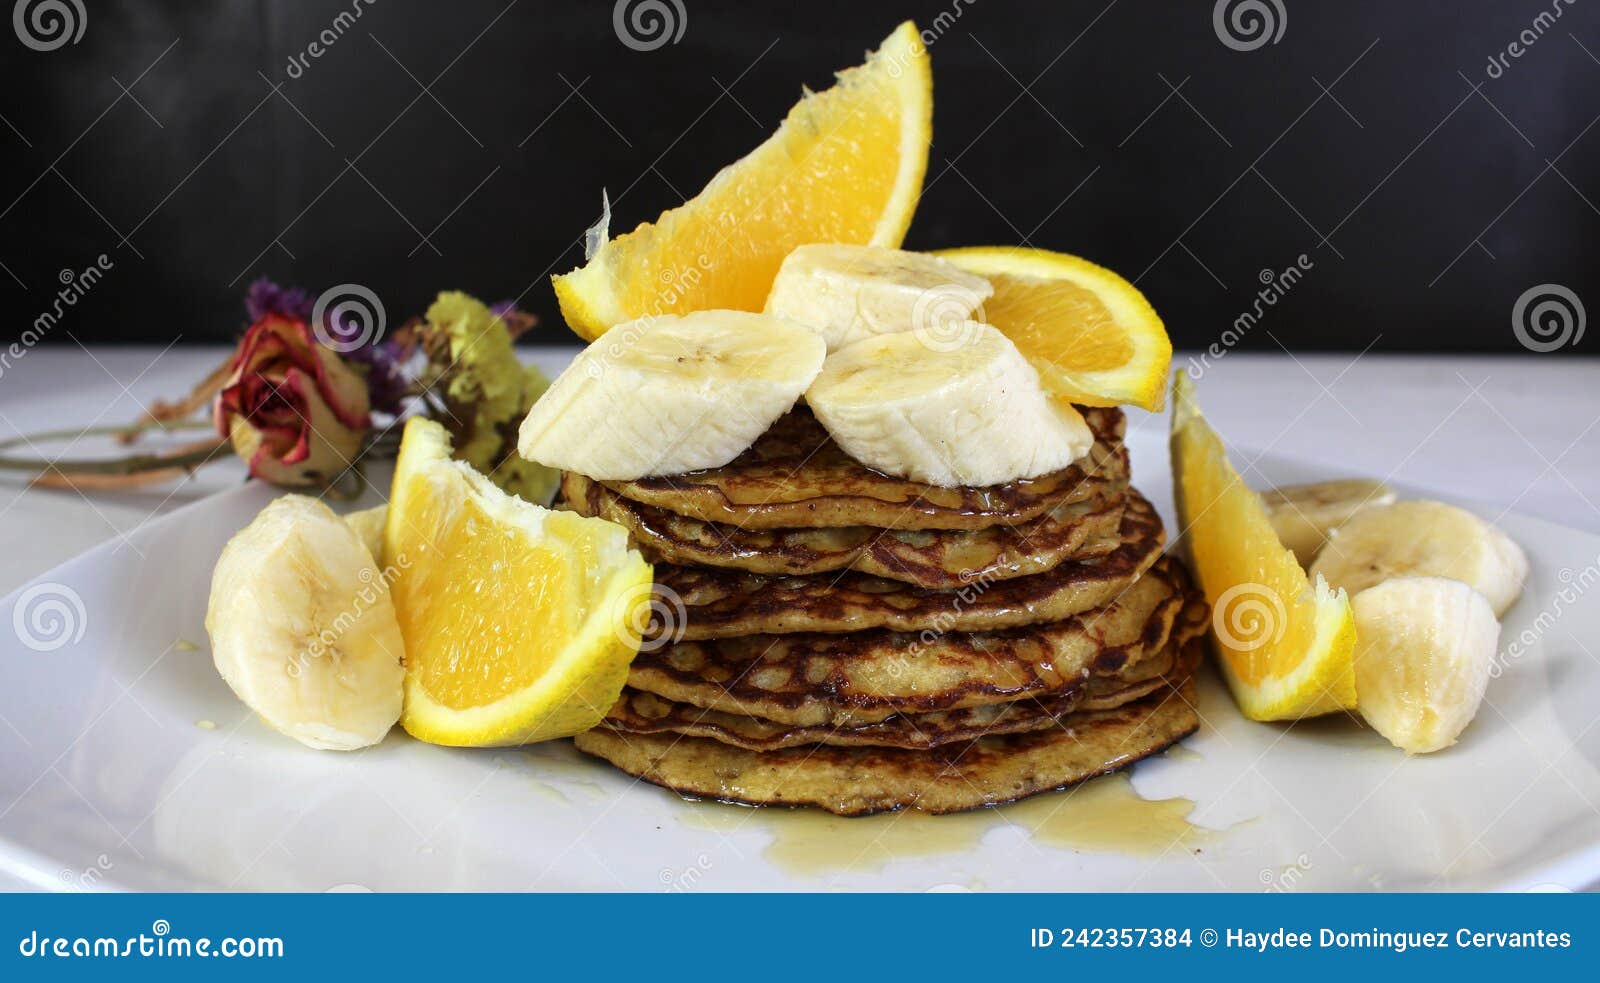 hotcakes de avena, platano y naranja. comida saludable, nutritiva y deliciosa! opciÃÂ³n ovo-vegetariana!